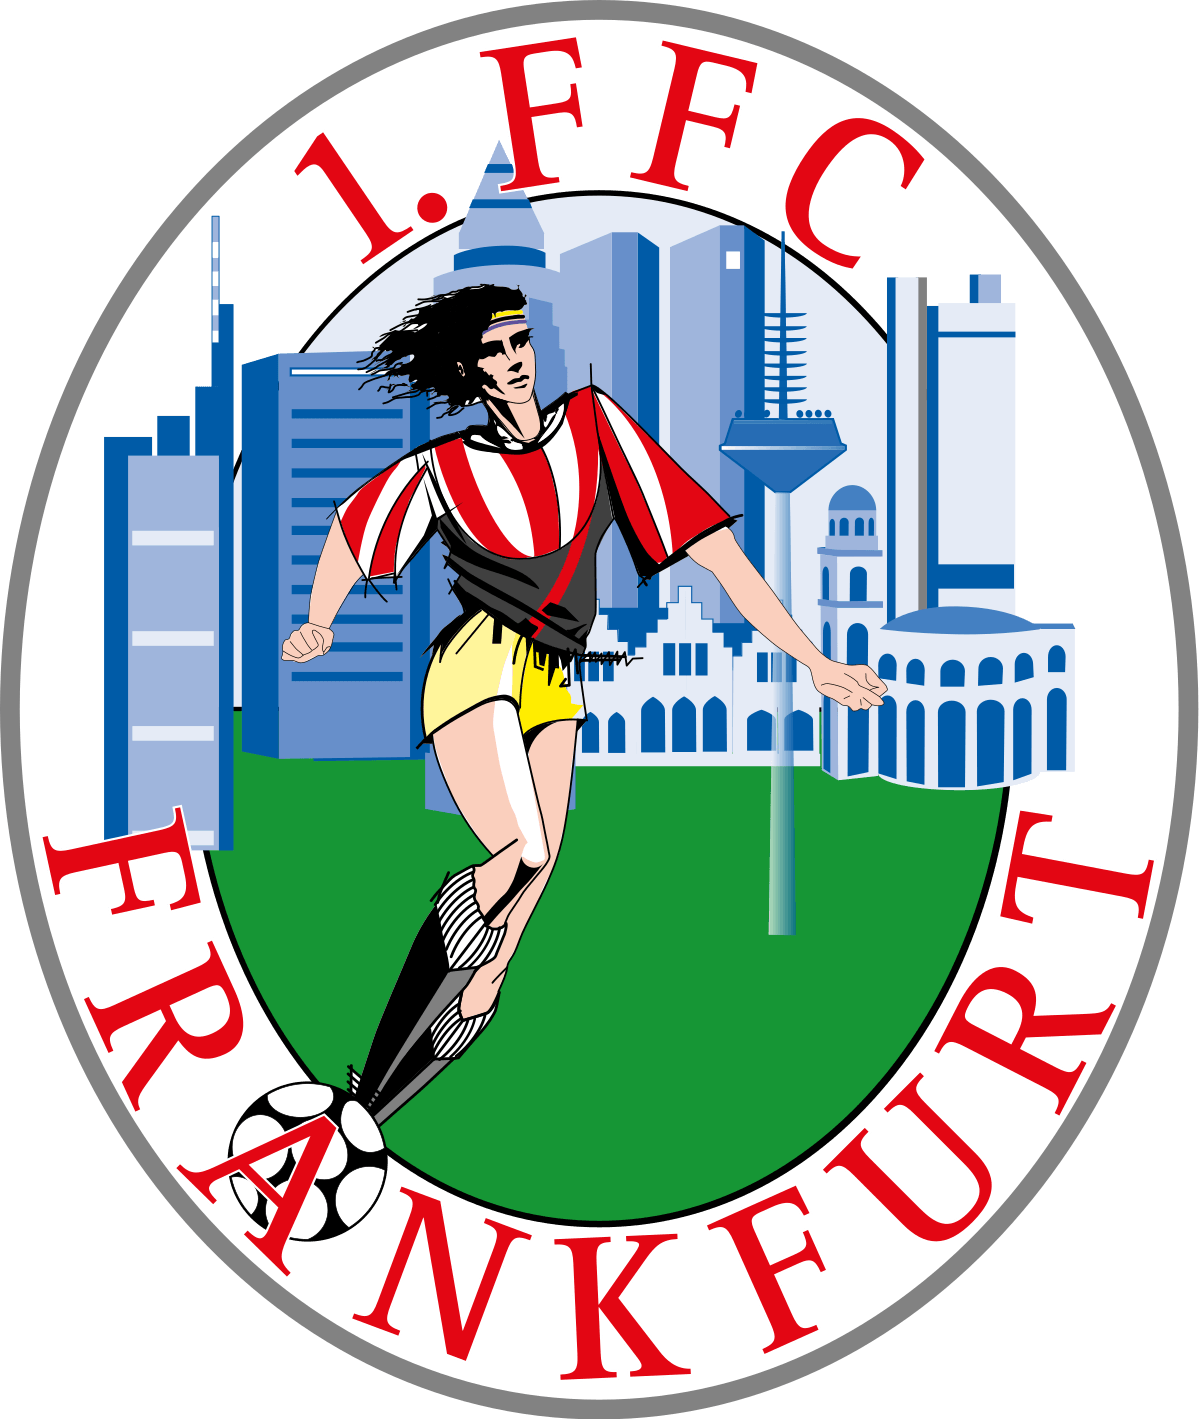 FFC Sports Club Logo - 1. FFC Frankfurt